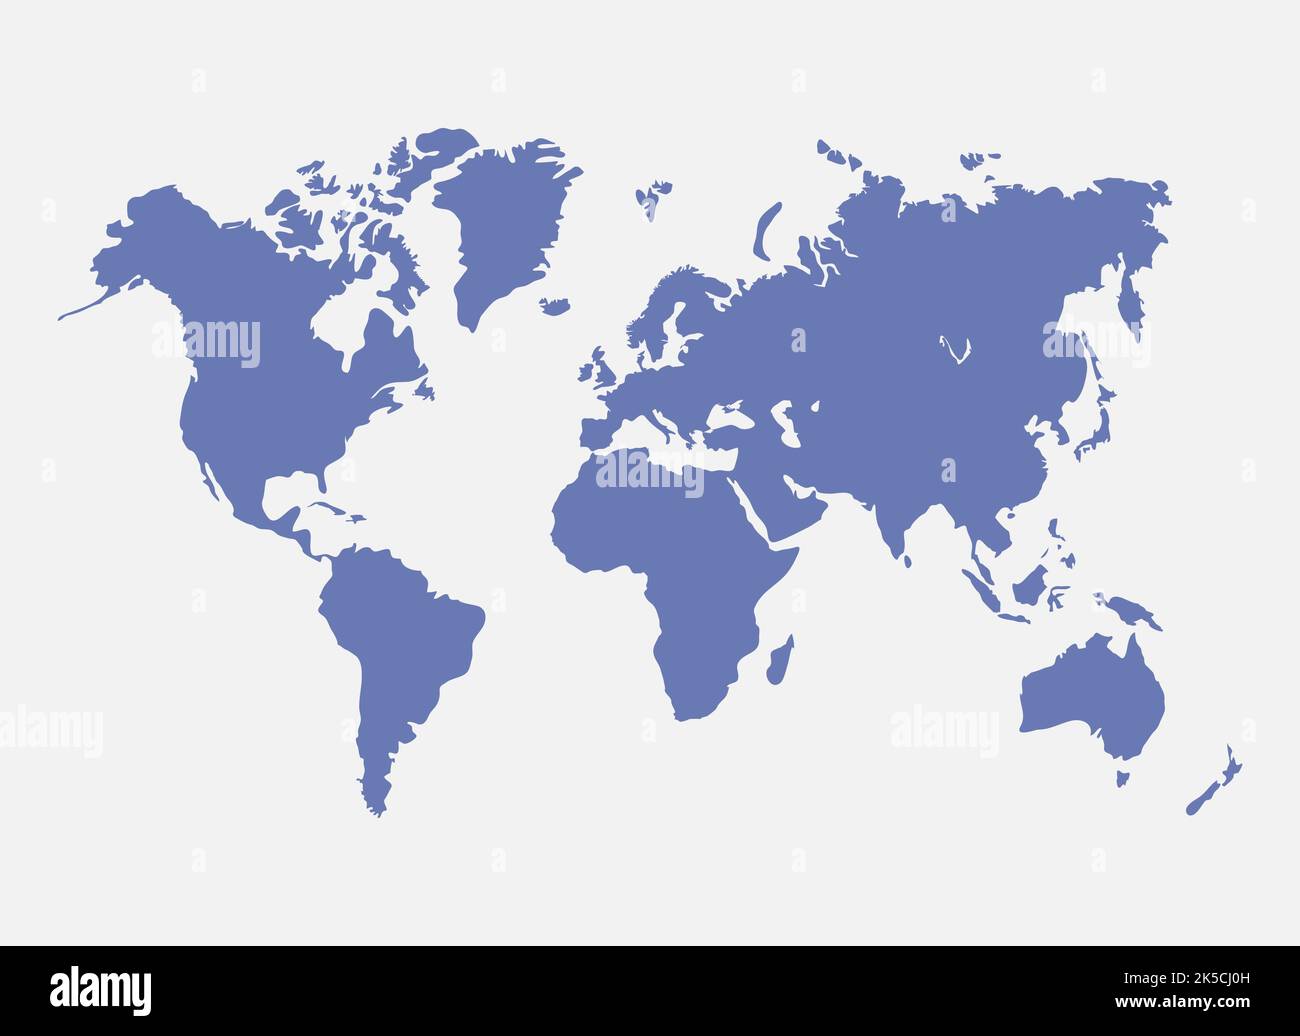 Mappa del mondo di colore blu isolata su sfondo bianco. Modello di mappa del mondo moderno con paesi e continenti come Australia, Europa, Africa, Nord Am Illustrazione Vettoriale